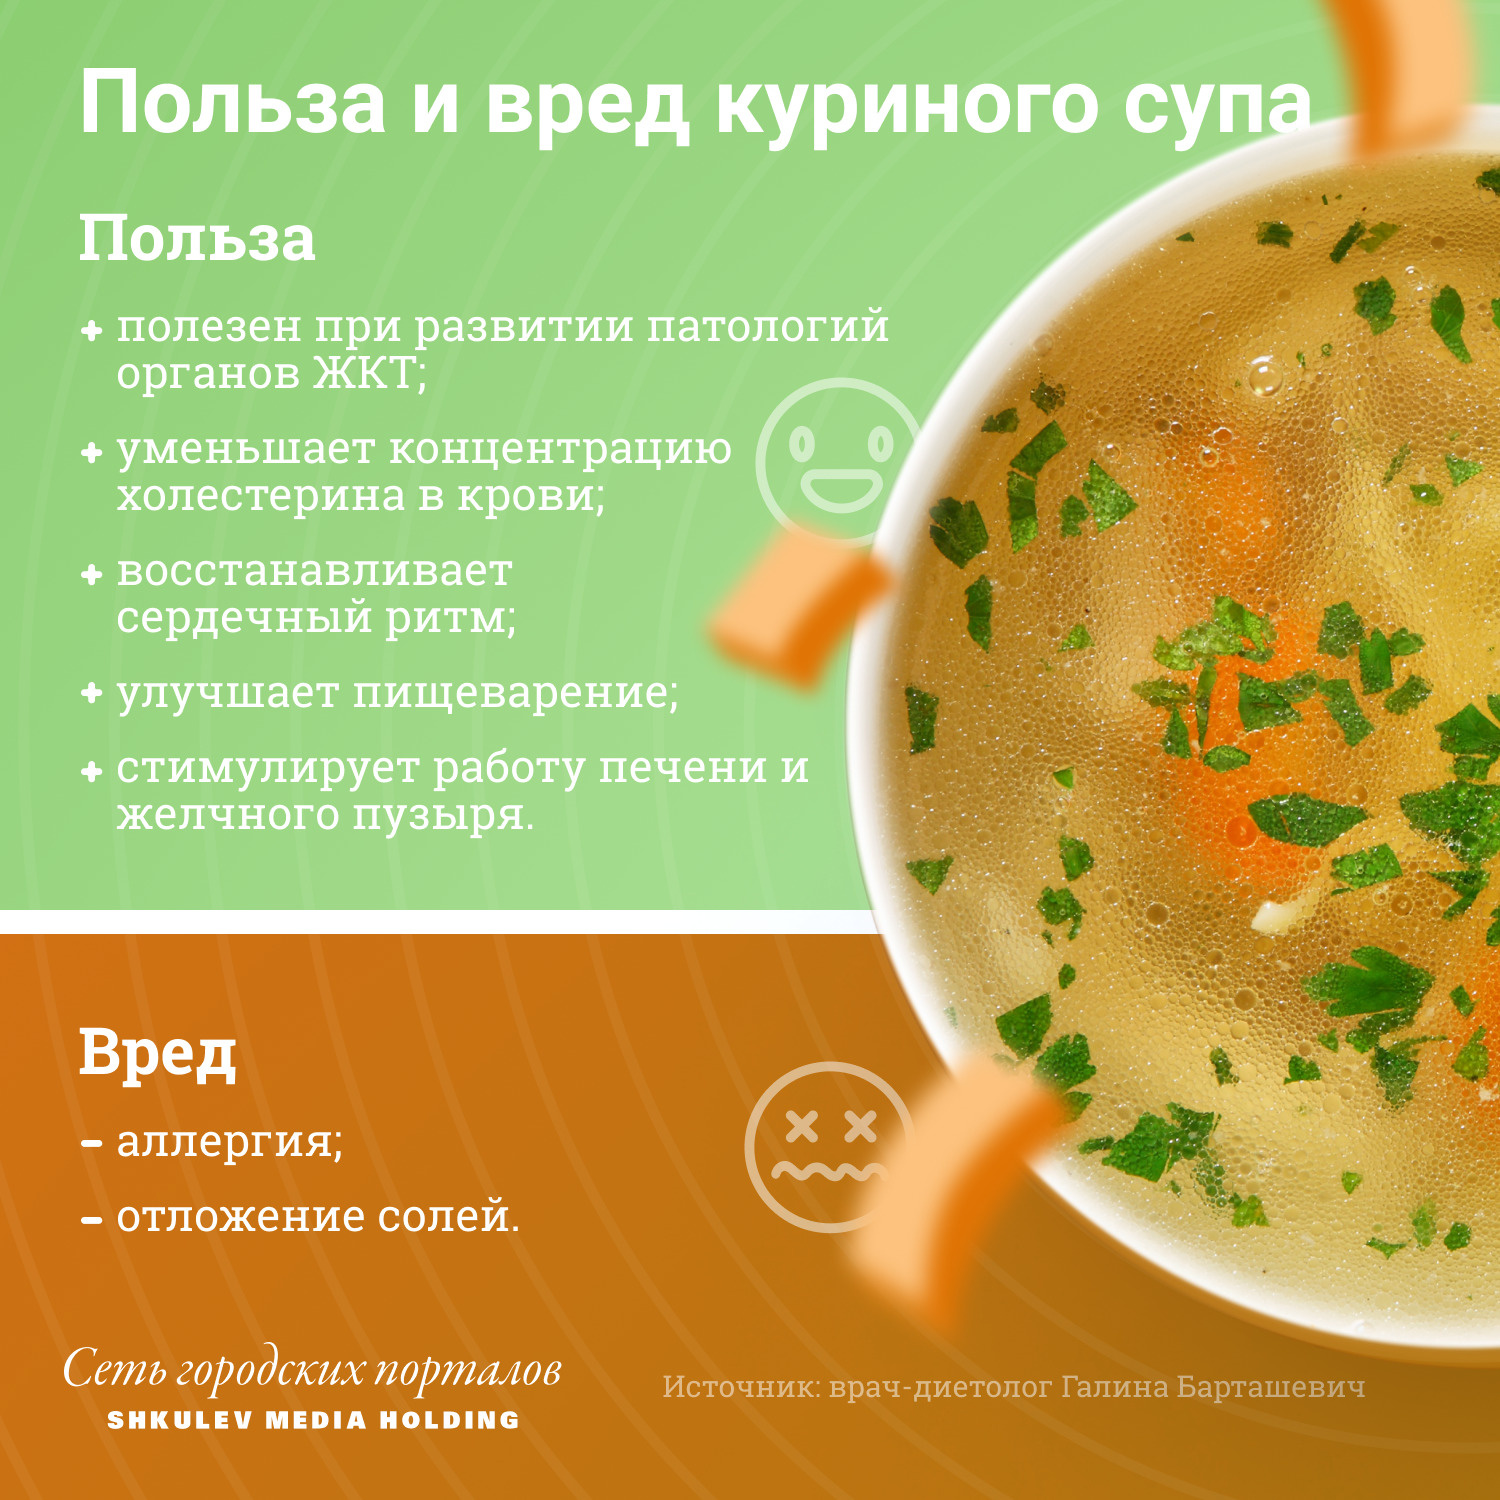 Полезные и вредные свойства куриного супа